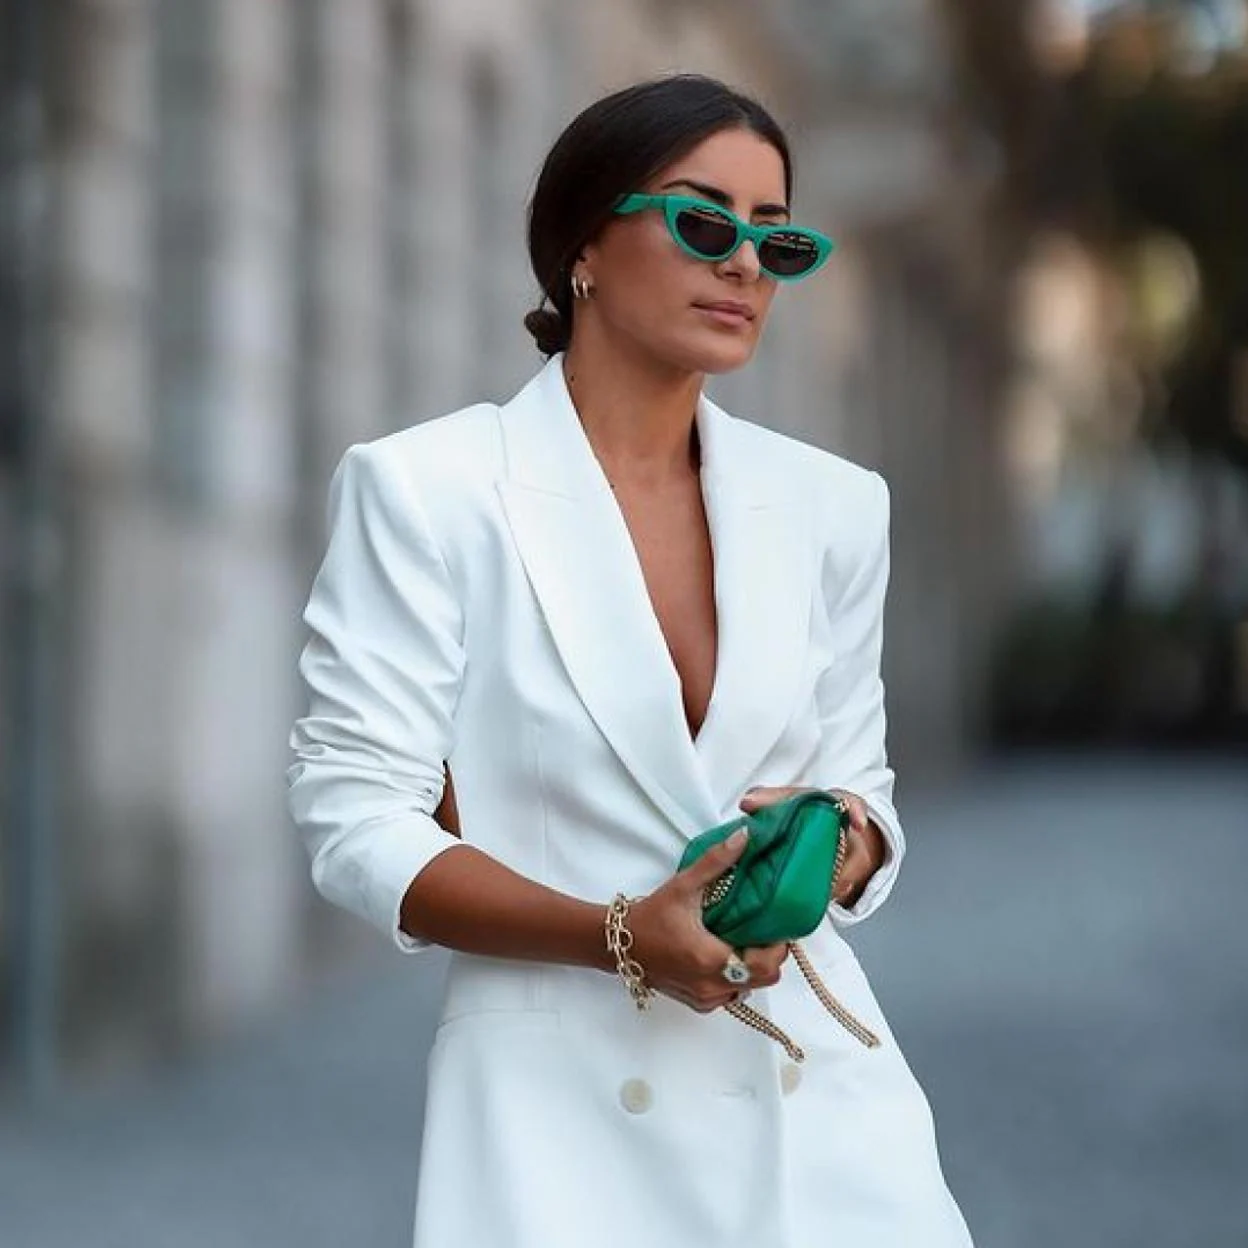 El original de chaqueta Zara perfecto para arrasar: blanco, barato y un escote la espalda muy estiloso | Mujer Hoy